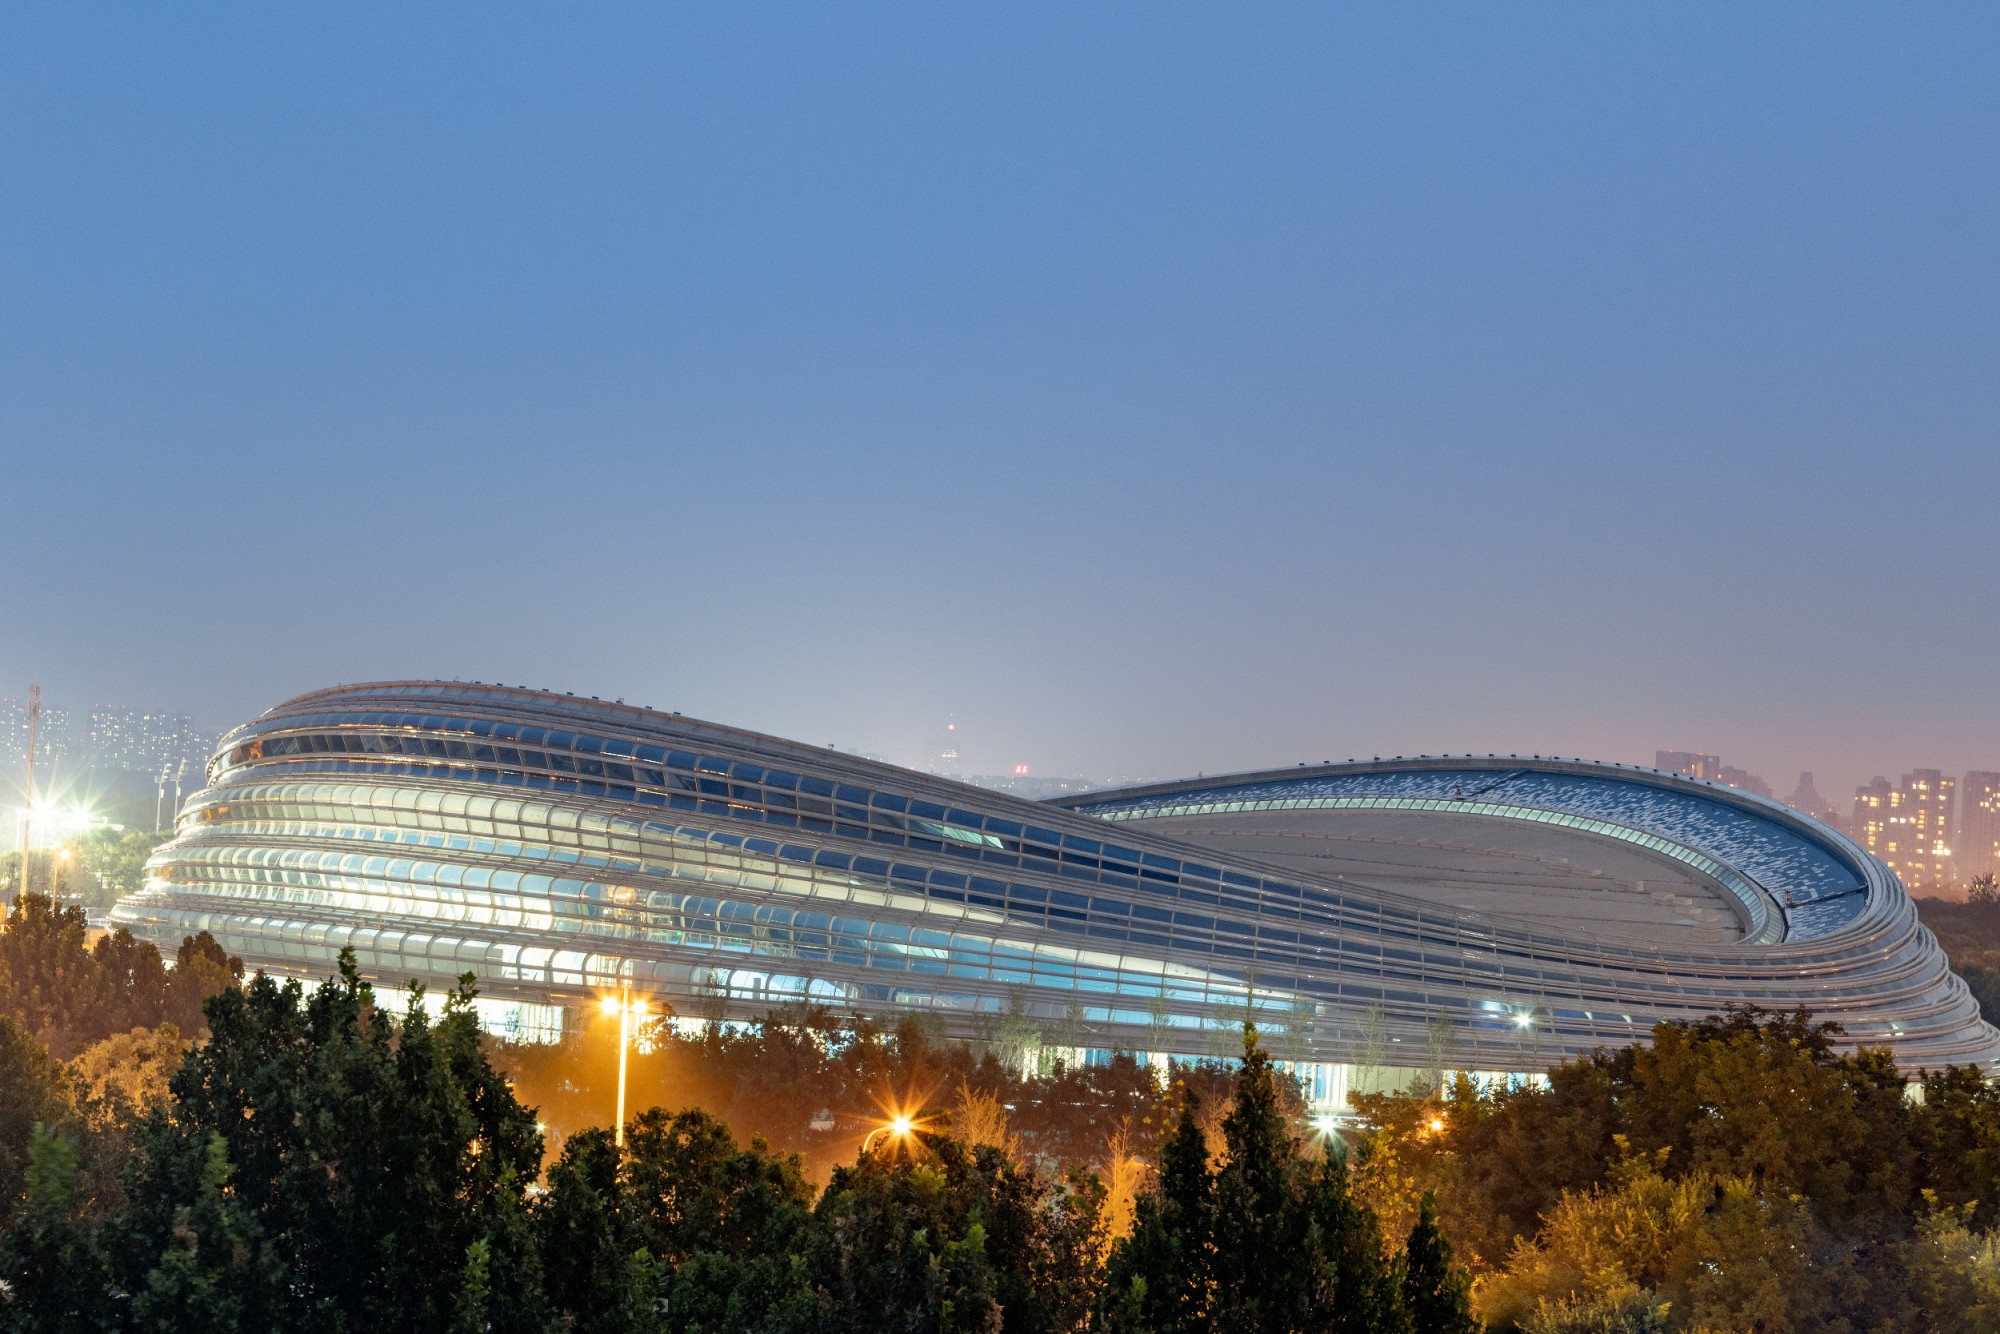 北京冬奥会主场馆图片